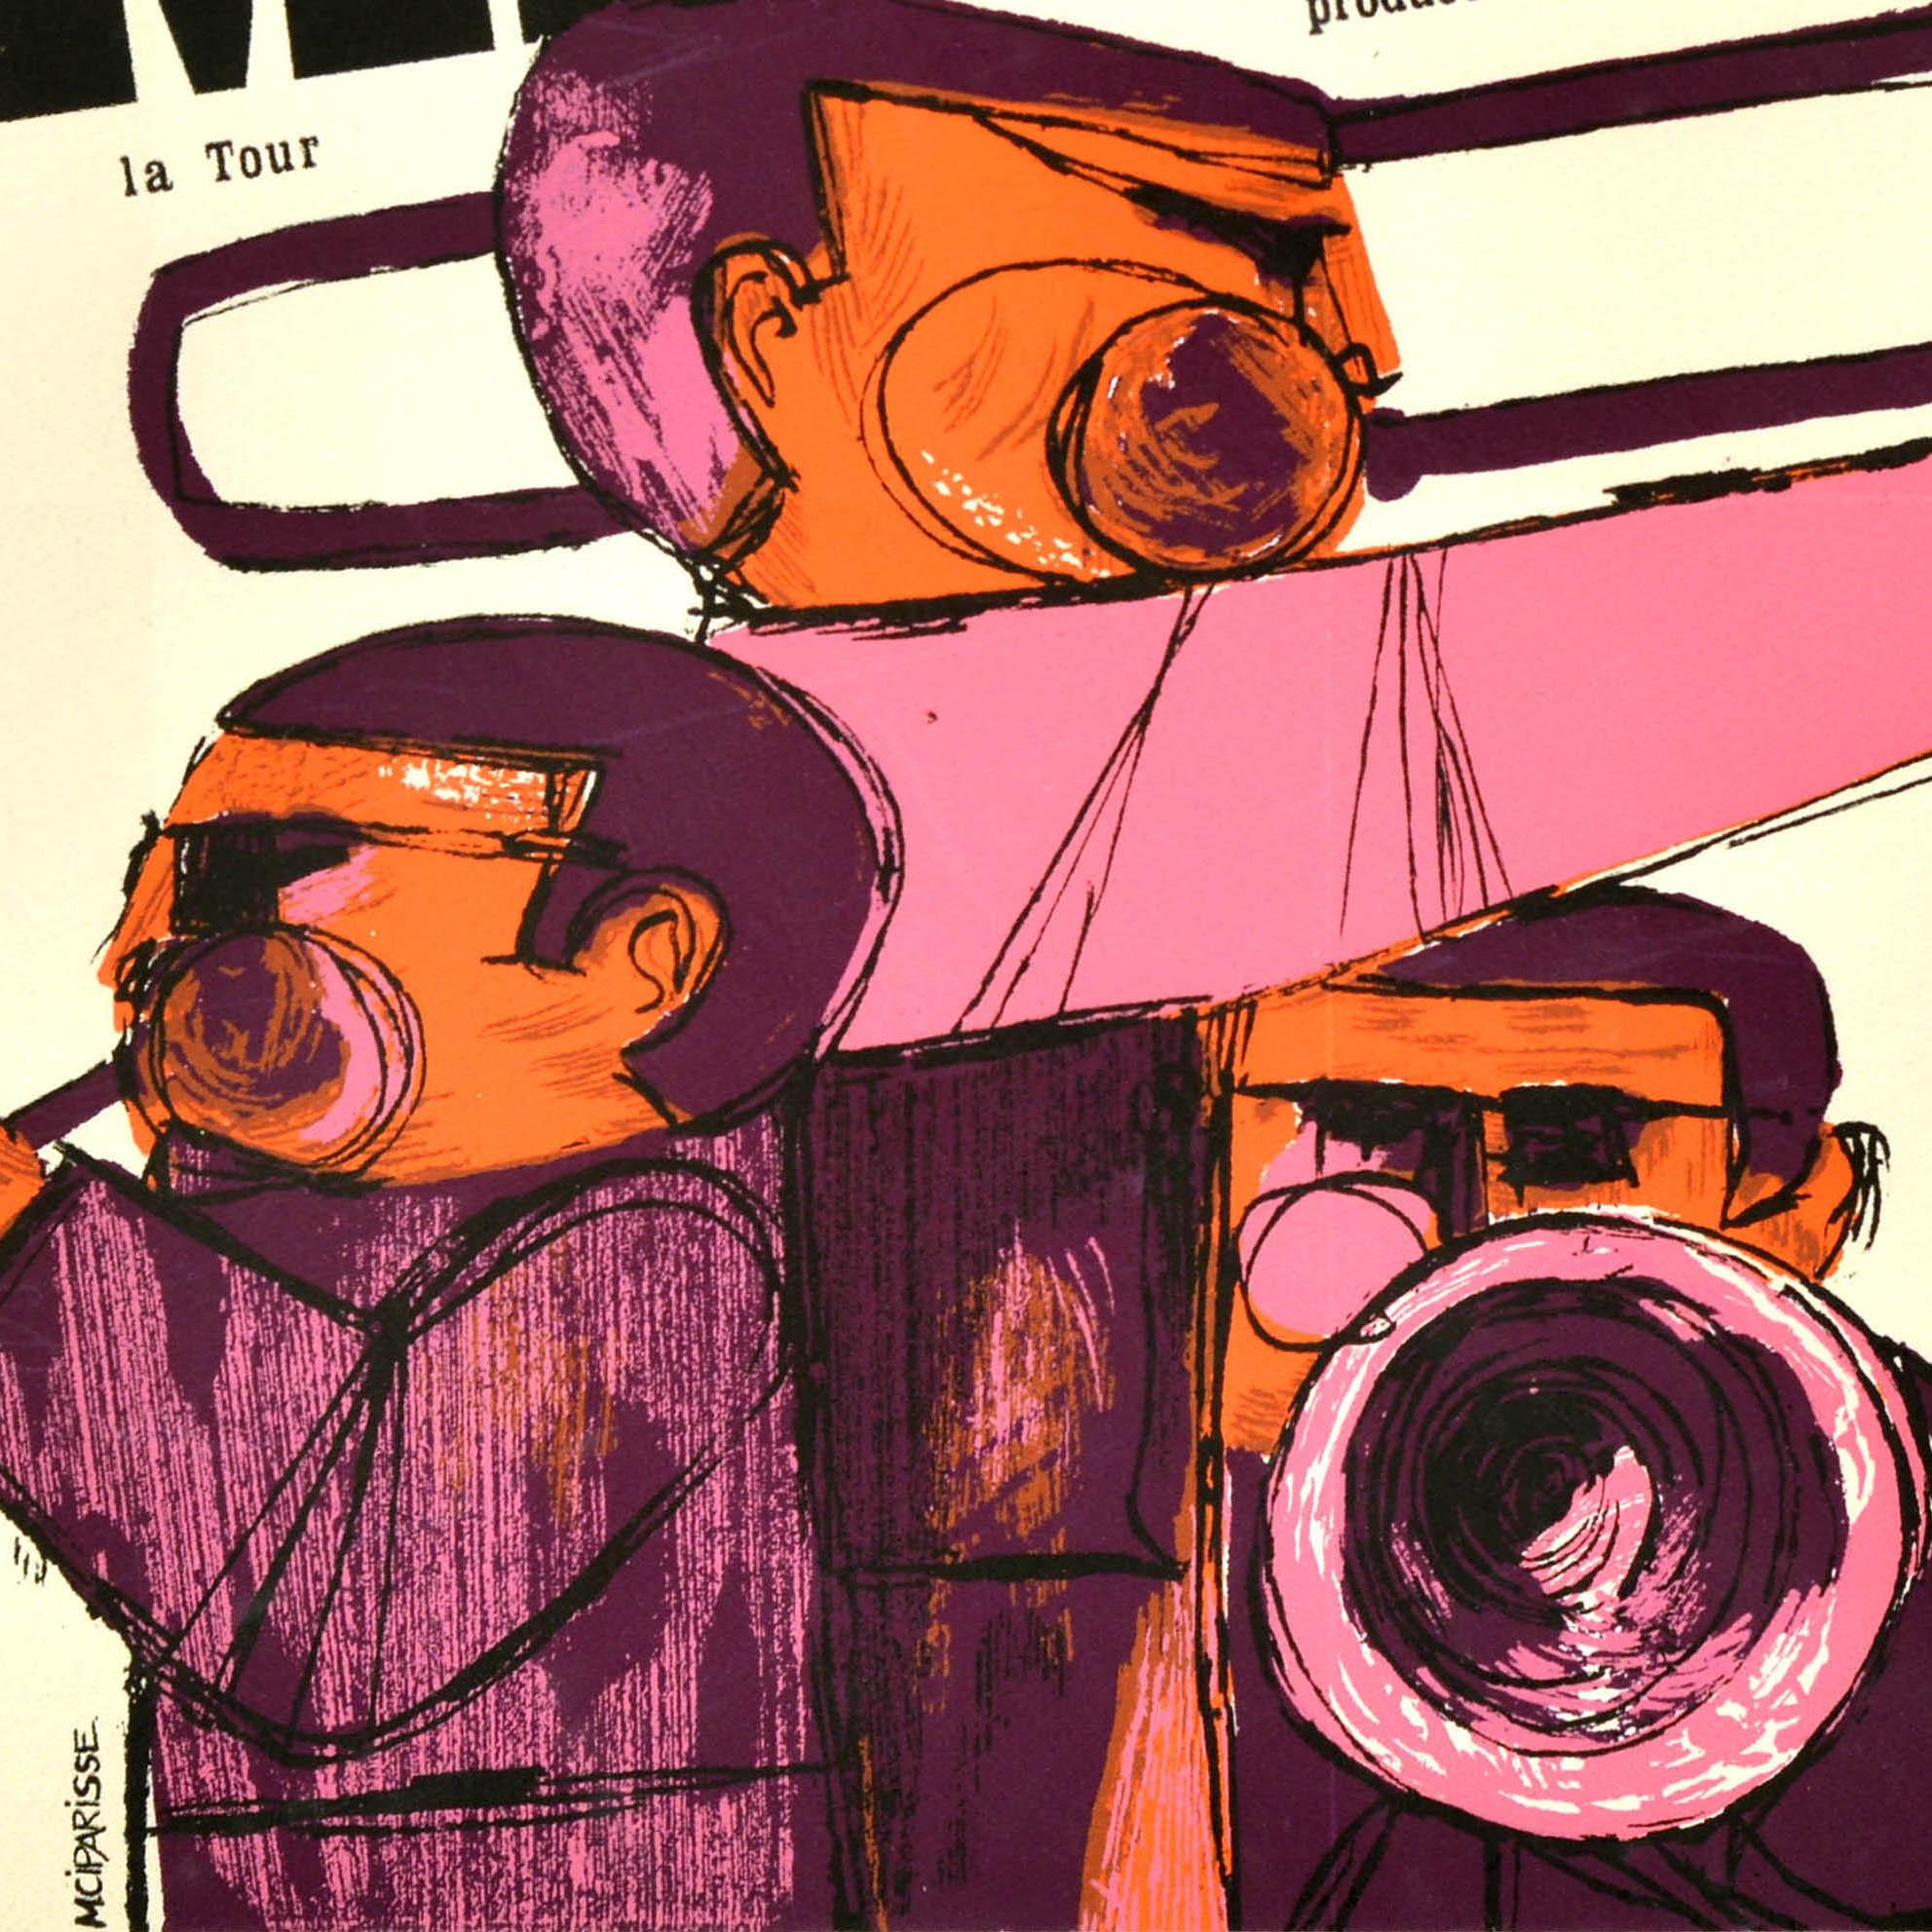 Affiche publicitaire originale pour le Festival International de Jazz d'Heldly 65, produit par Joe Napoli, qui s'est déroulé du 31 juillet au 1er août. L'affiche présente une superbe illustration de trois musiciens jouant du trombone et de la